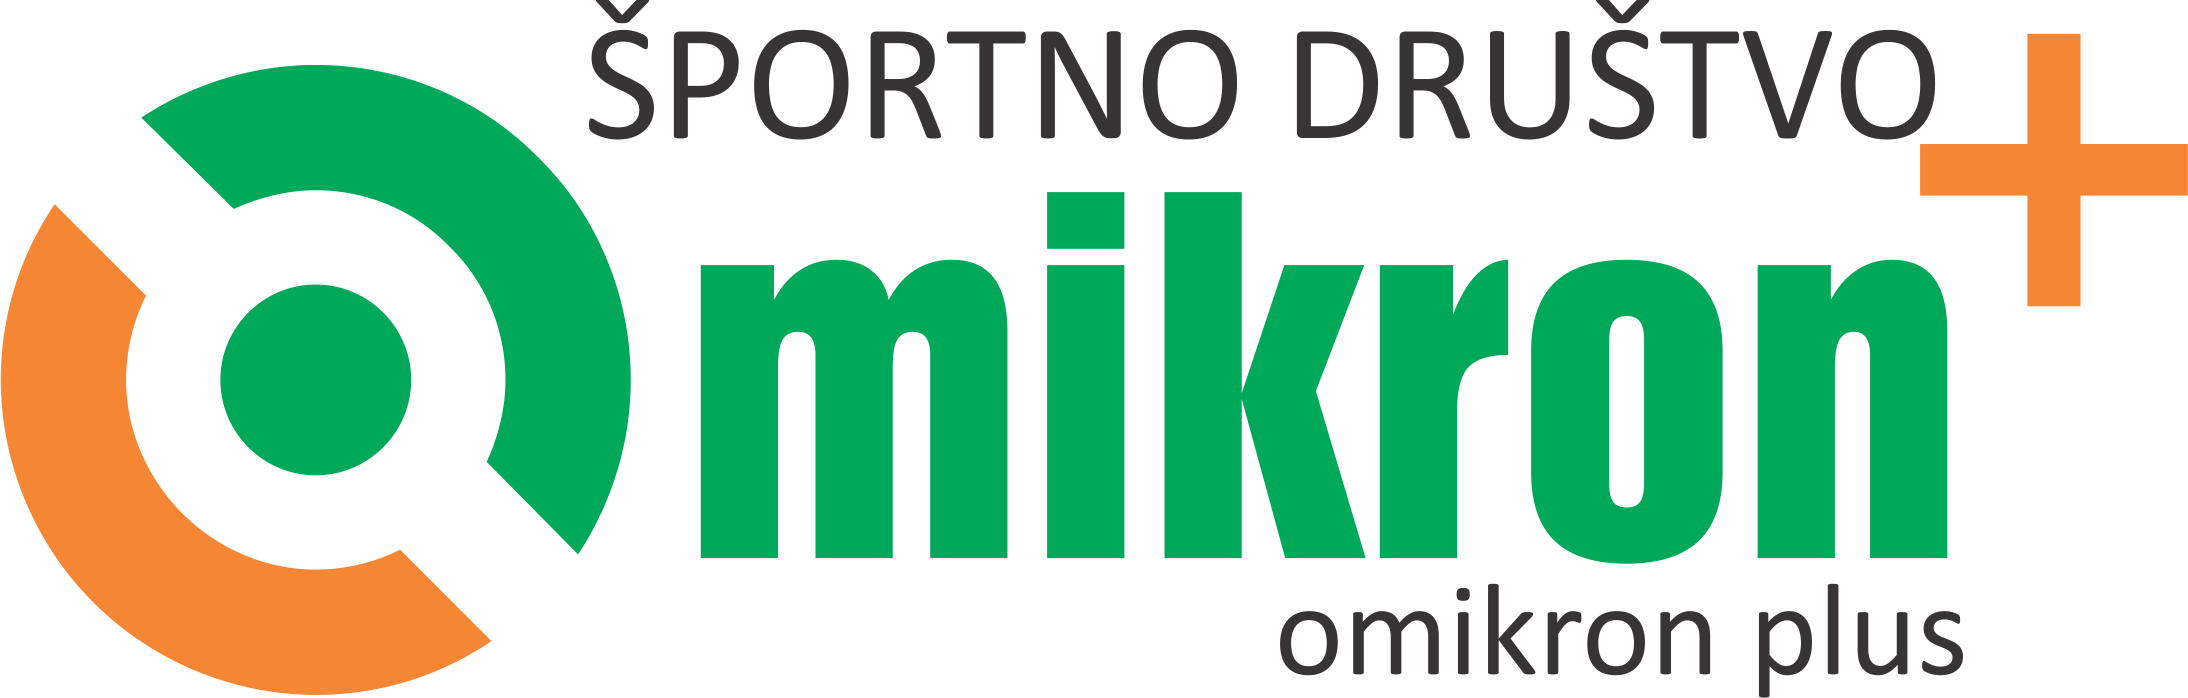 šd_omikron_logo